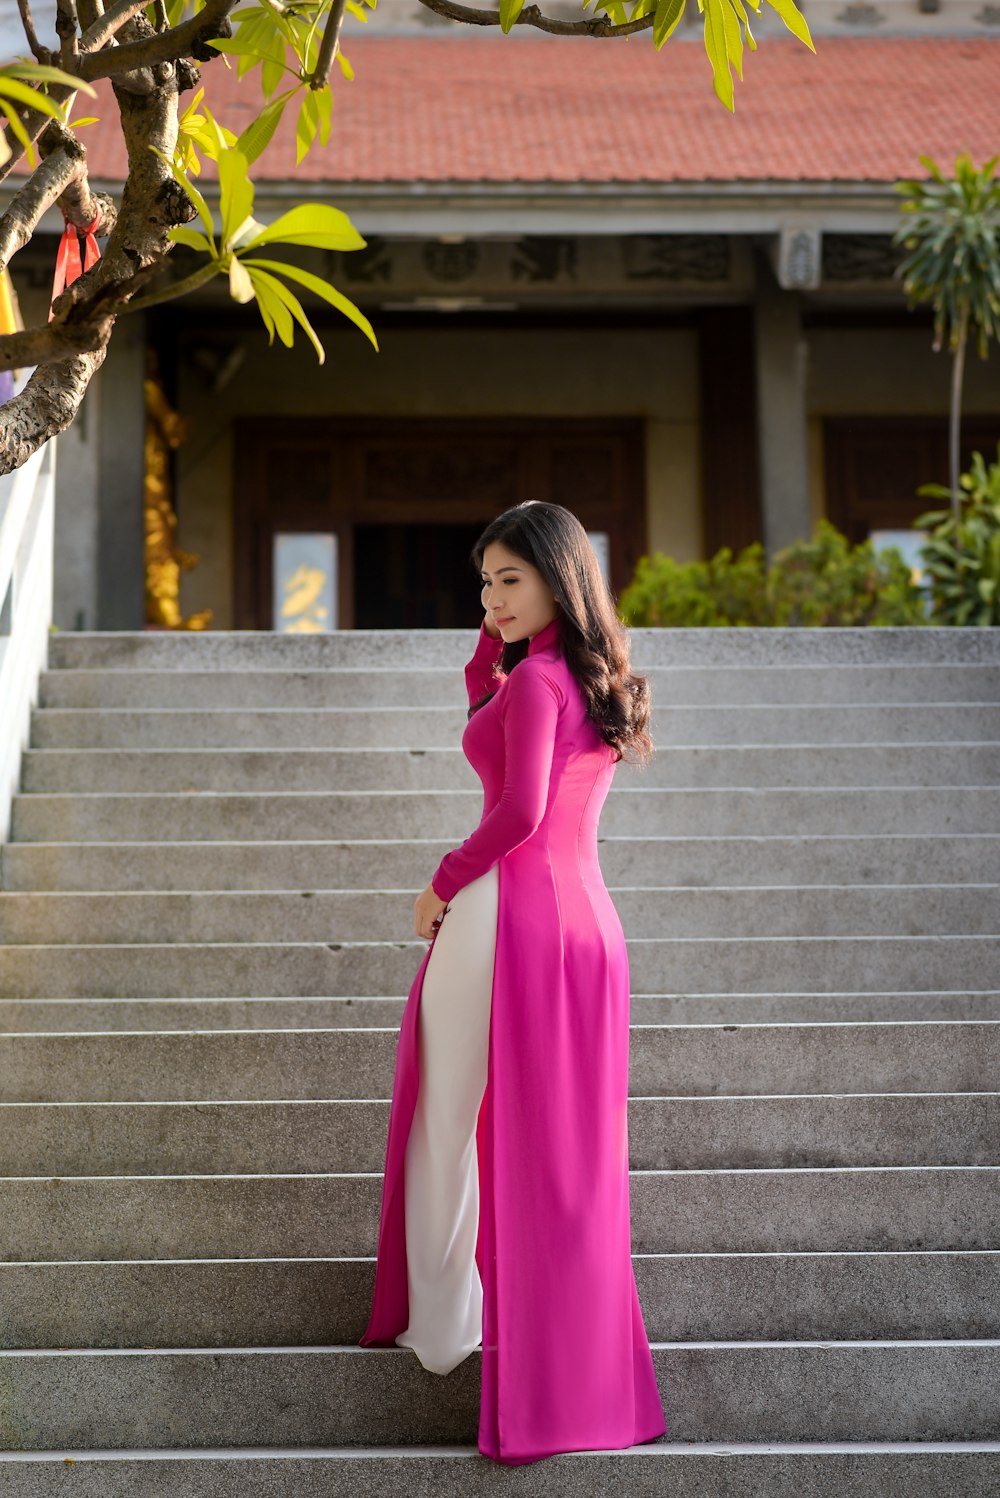 Femme en robe rose à manches longues debout sur des escaliers en béton gris